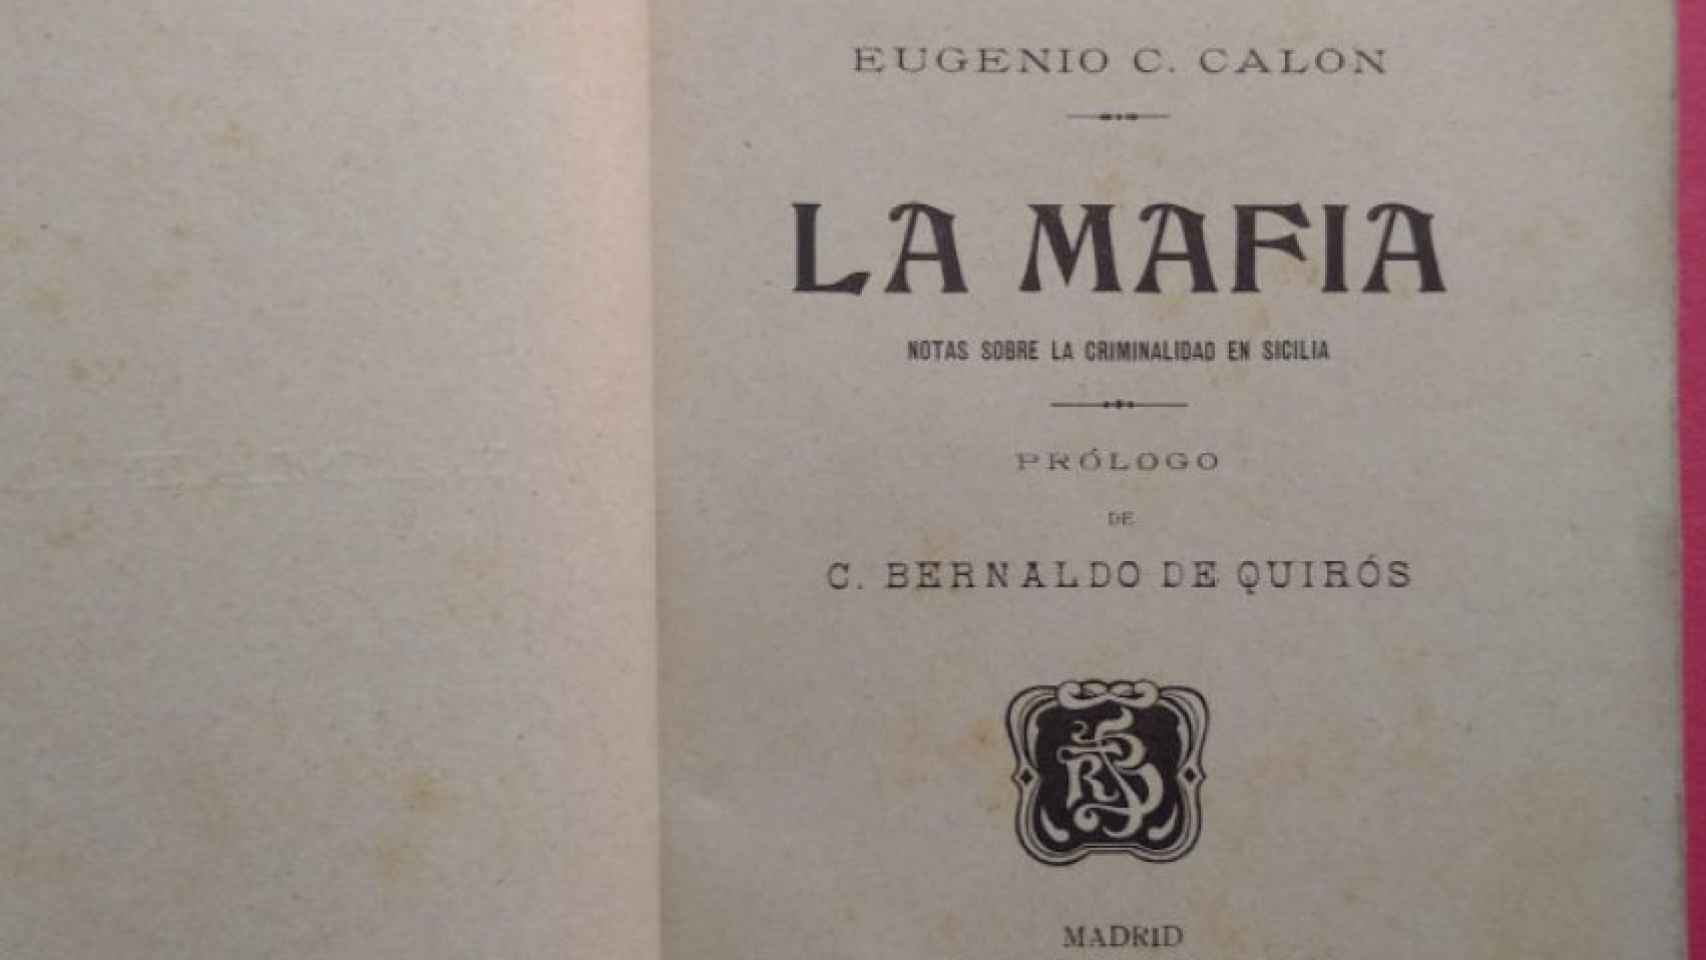 Publicación de Eugenio Cuello Calón en 1905 sobre la Mafia italiana.